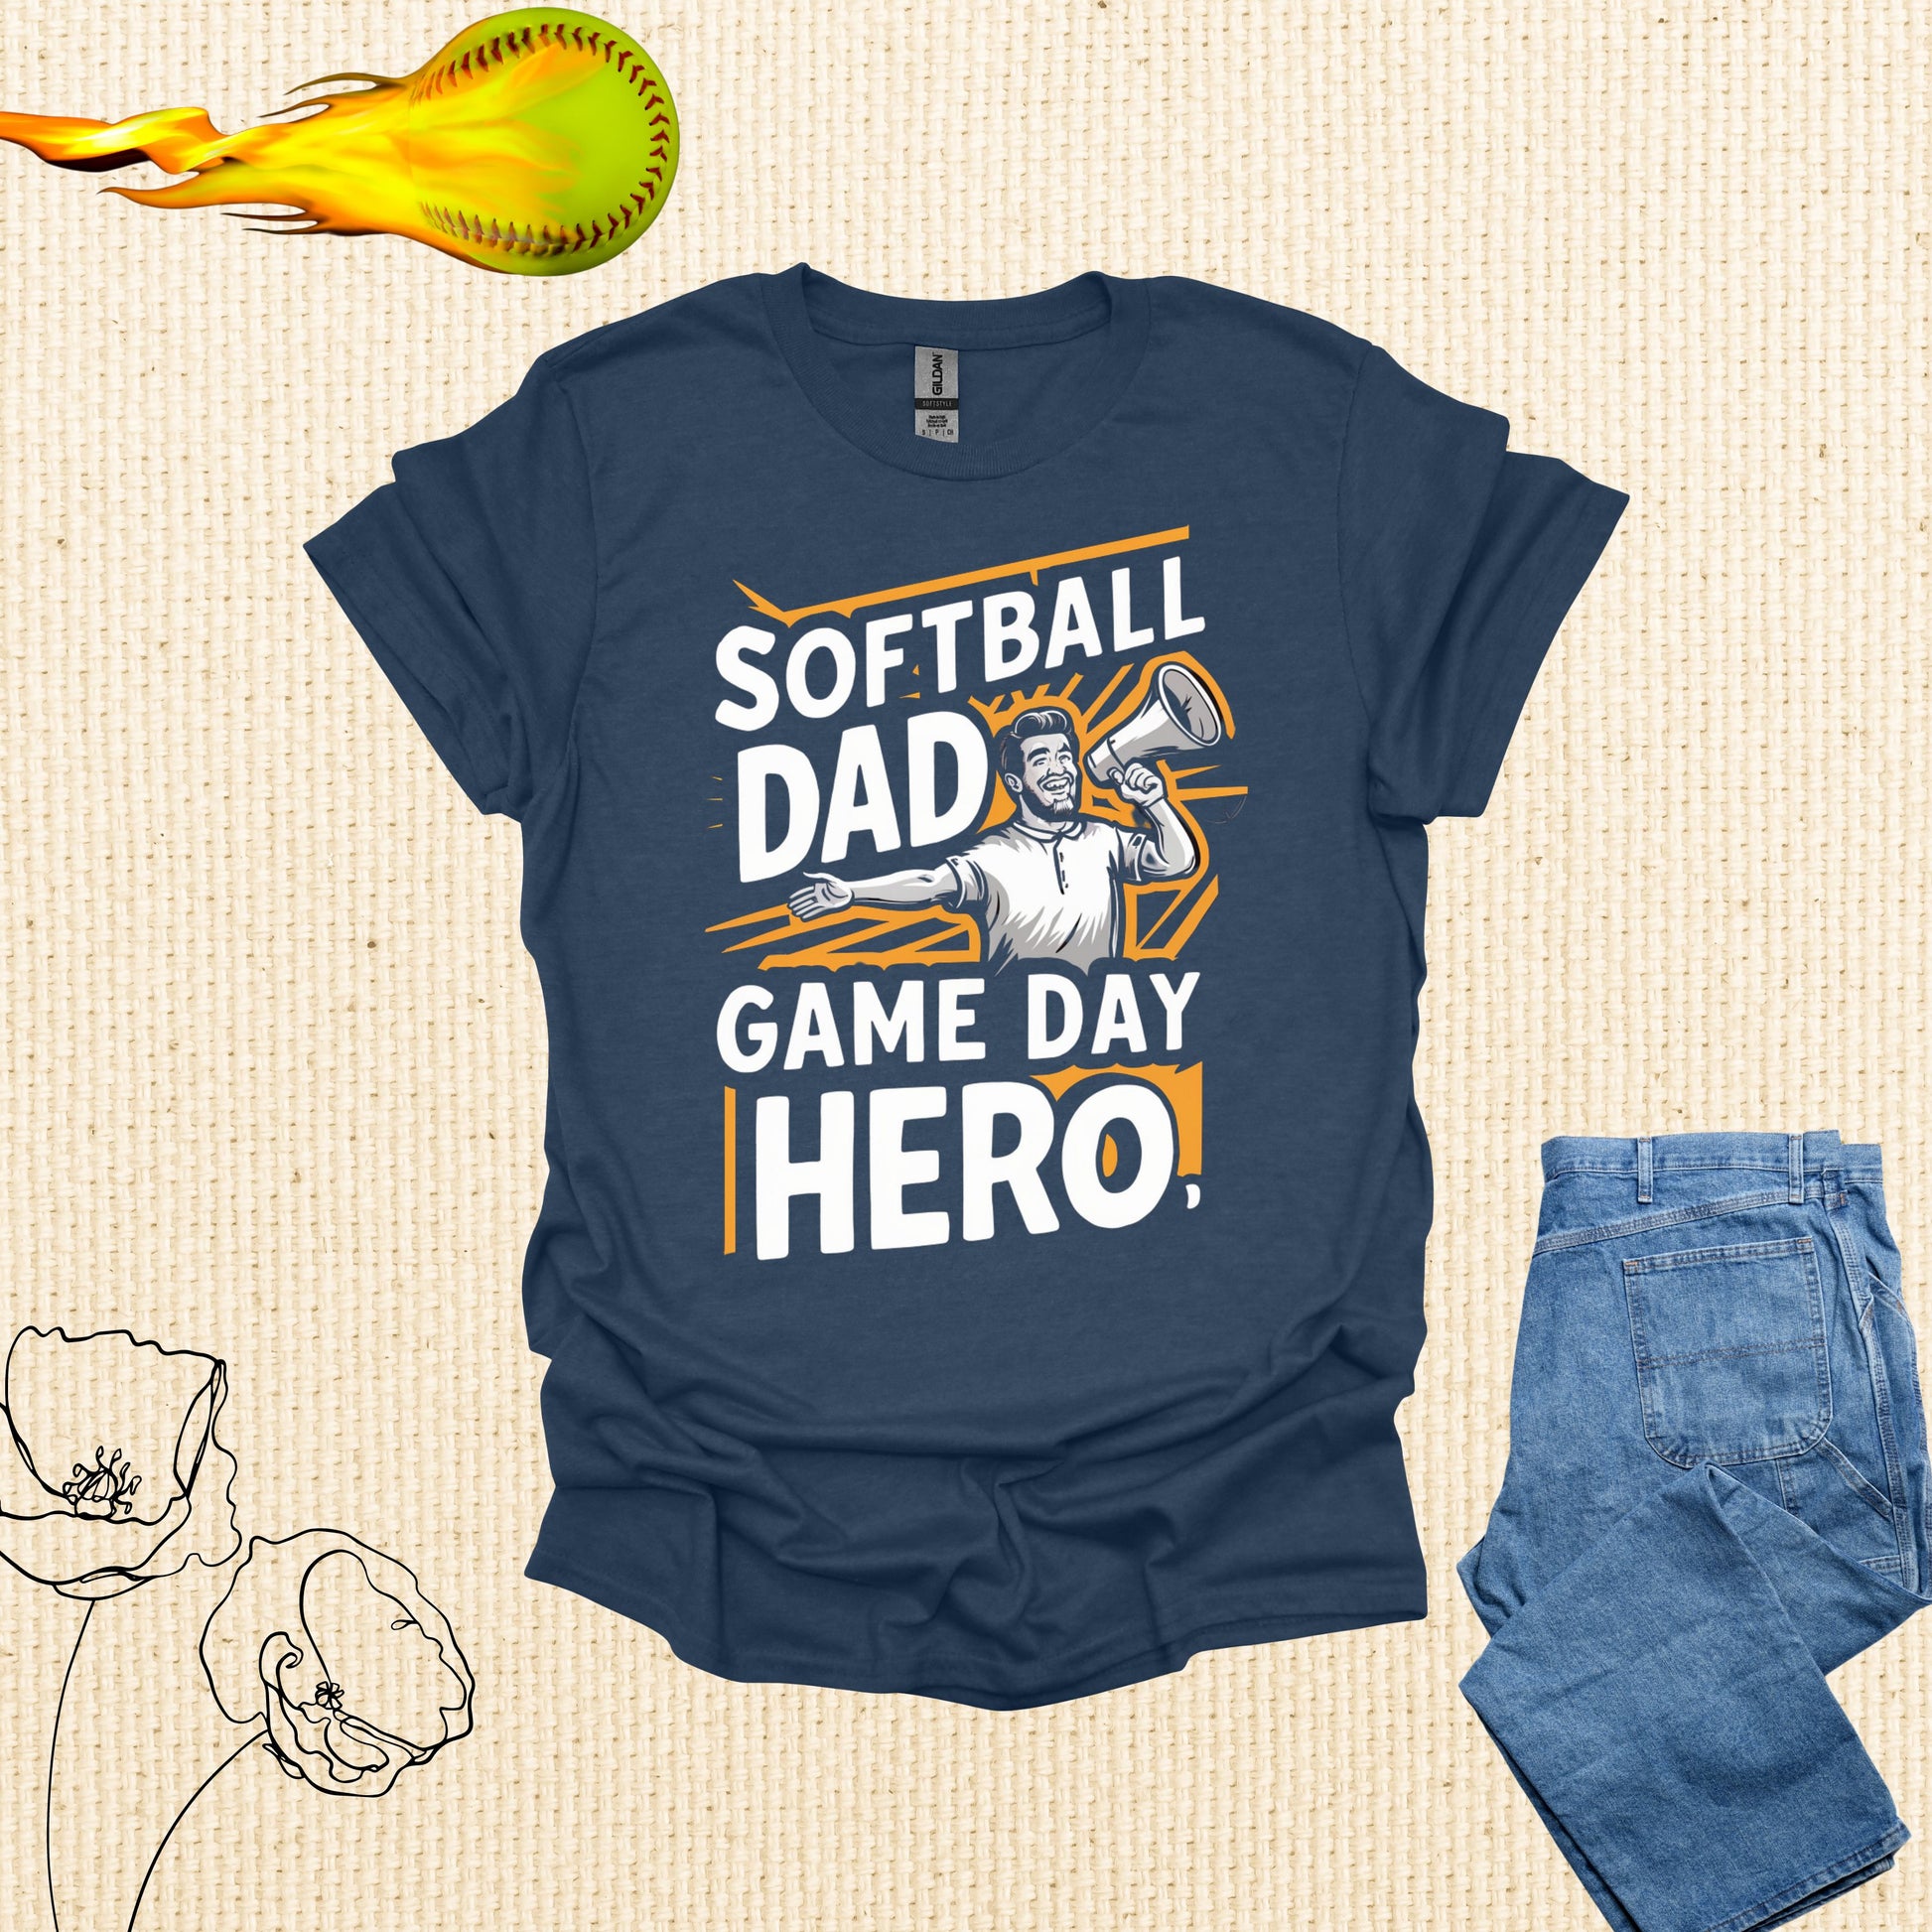 Softball Dad Navy Shirt - Game Day Hero